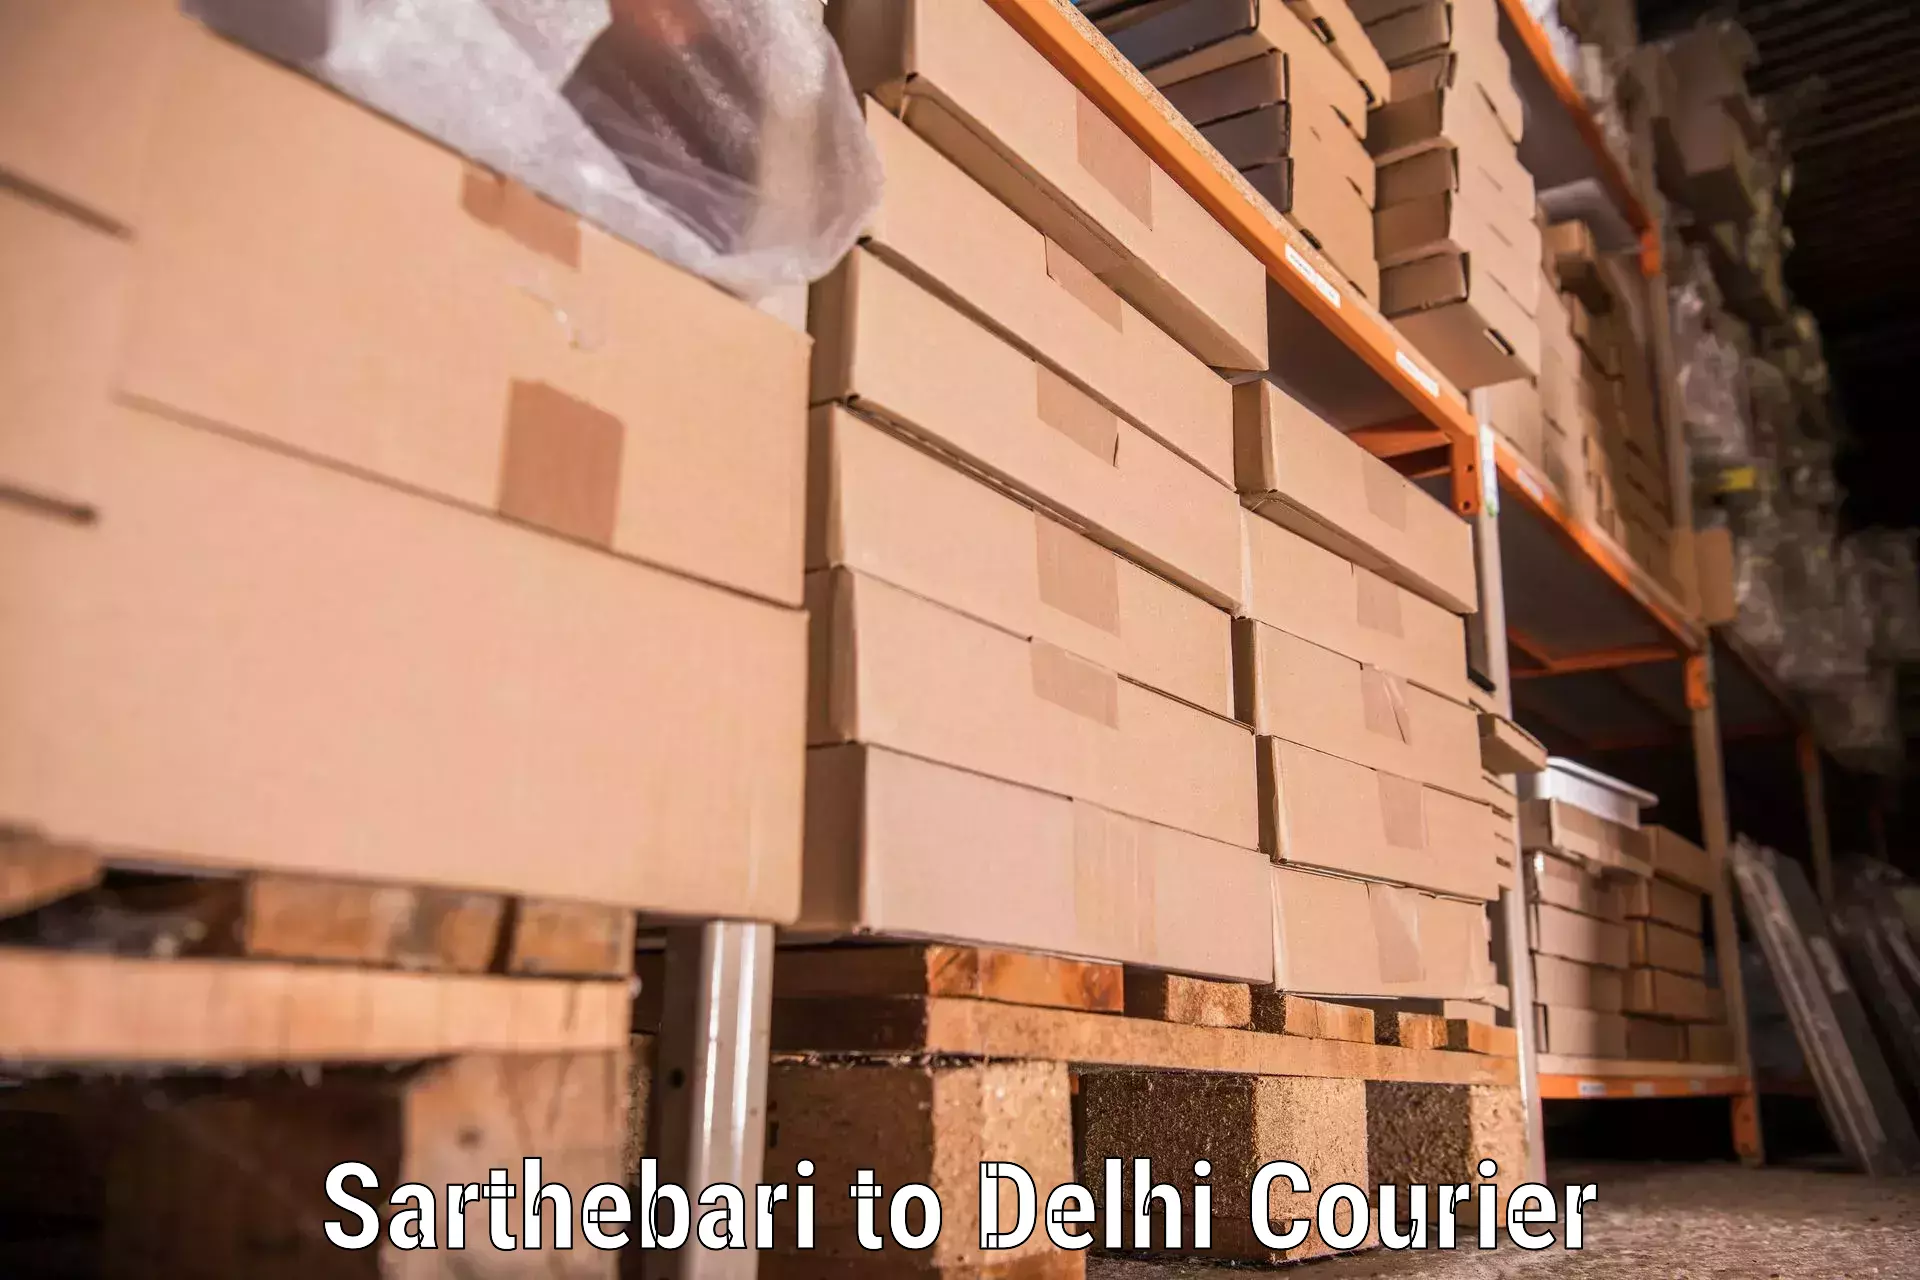 Furniture delivery service in Sarthebari to Delhi